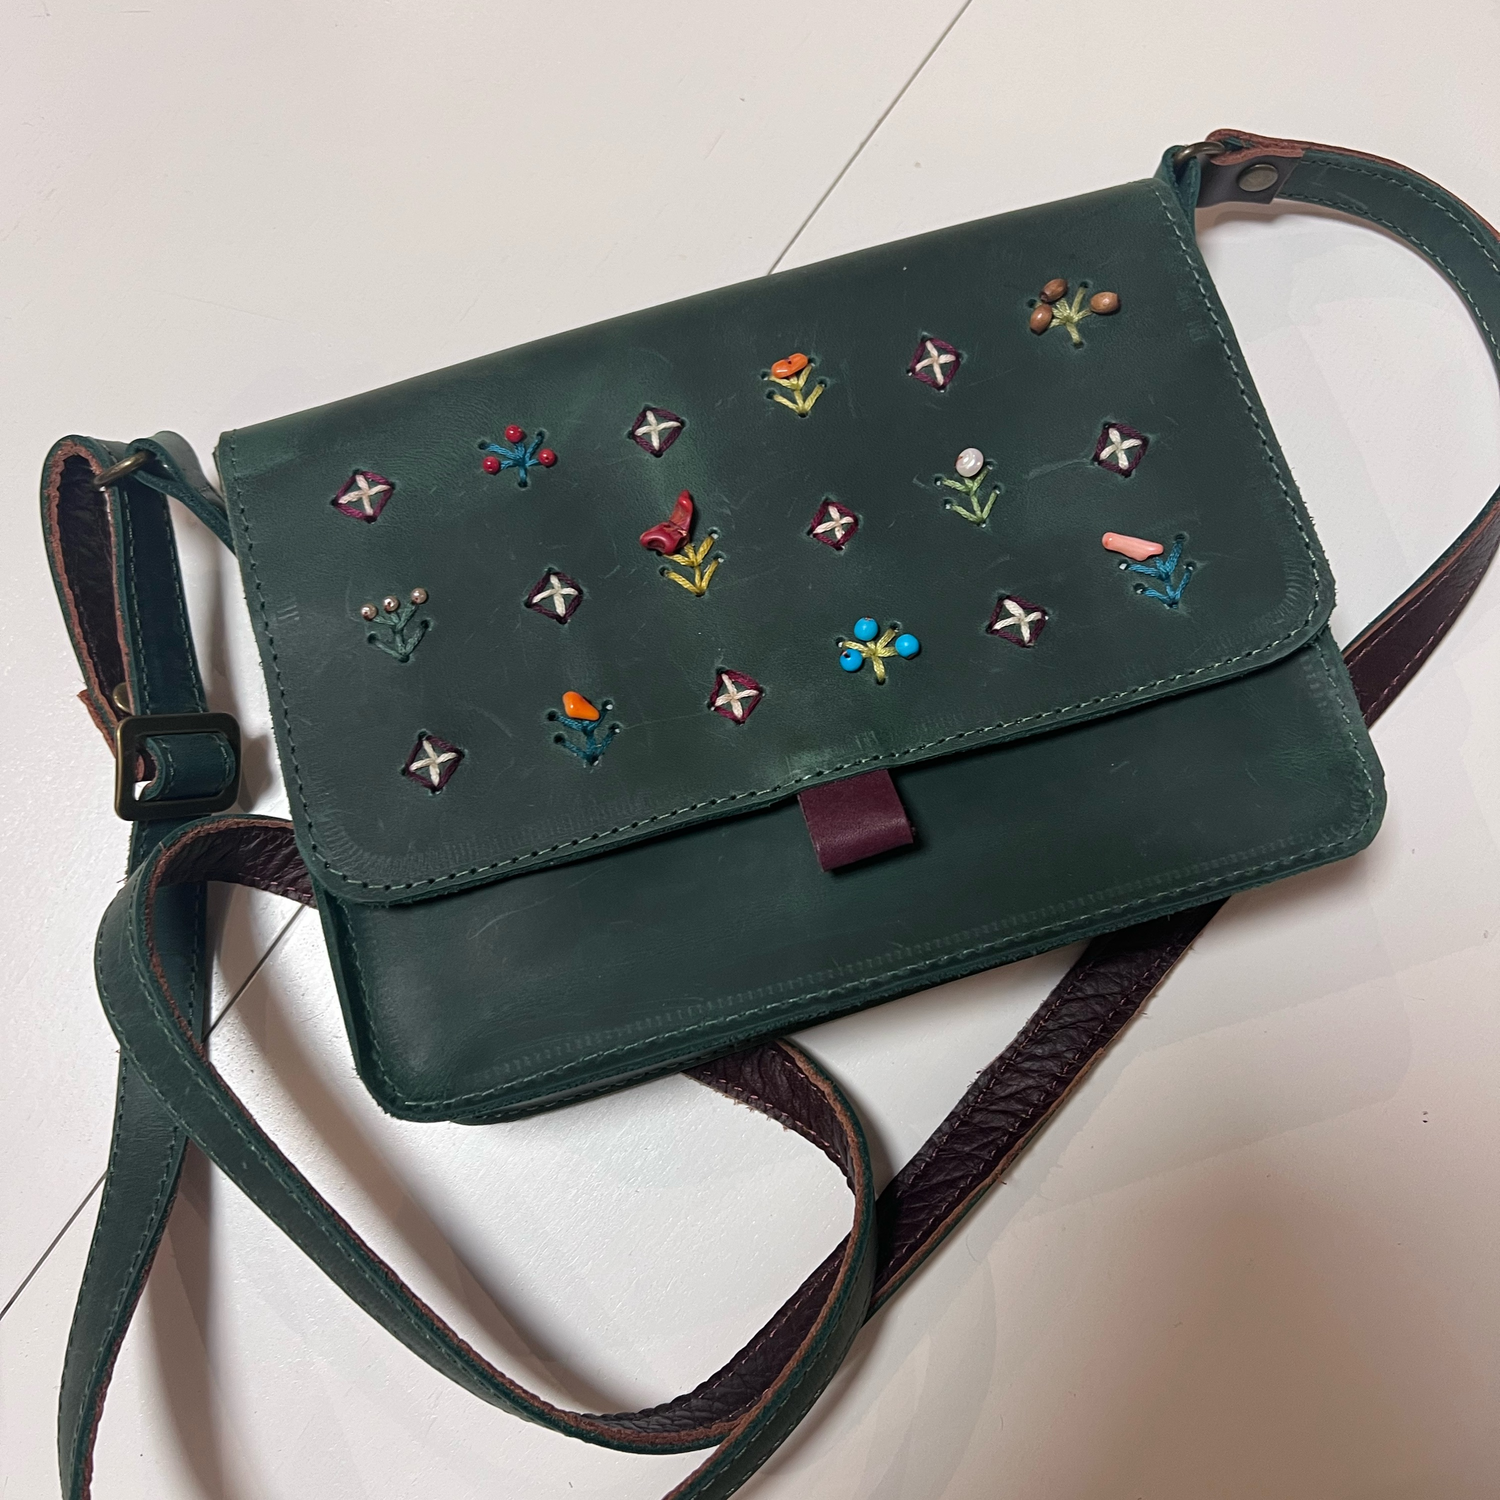 Photo №2 к отзыву покупателя Darya Egumnova о товаре Маленькая сумочка из натуральной кожи с вышивкой ручной работы.